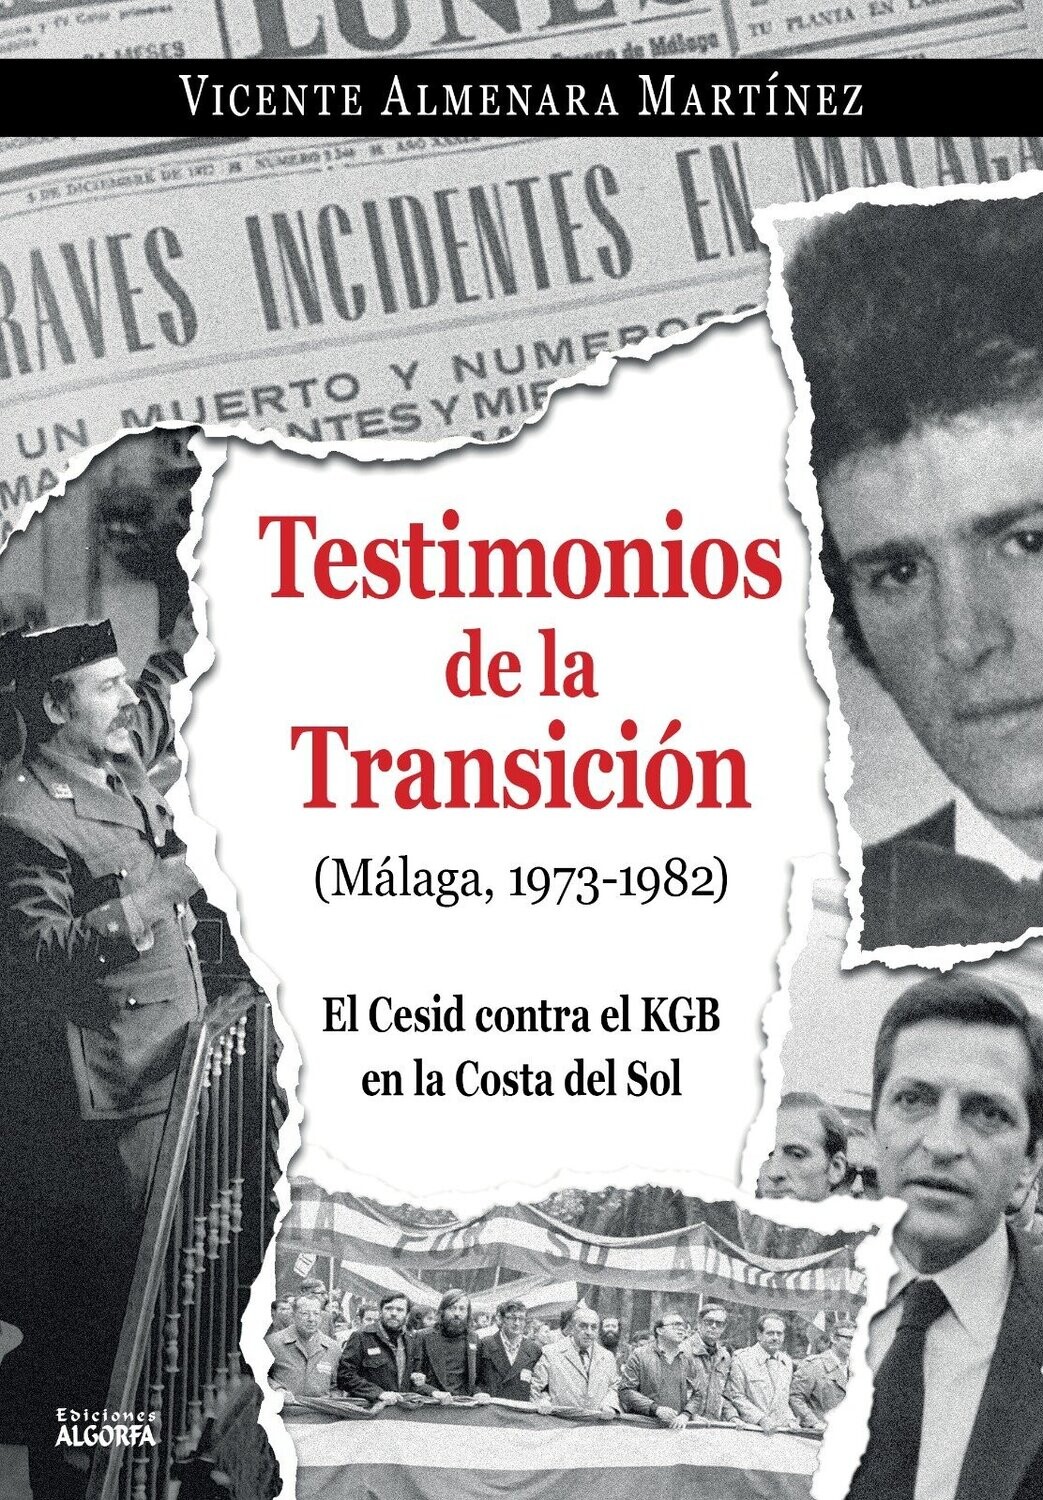 Testimonios de la Transición (Málaga, 1973-1982)
El Cesid contra el KGB en la Costa del Sol.
Vicente Almenara